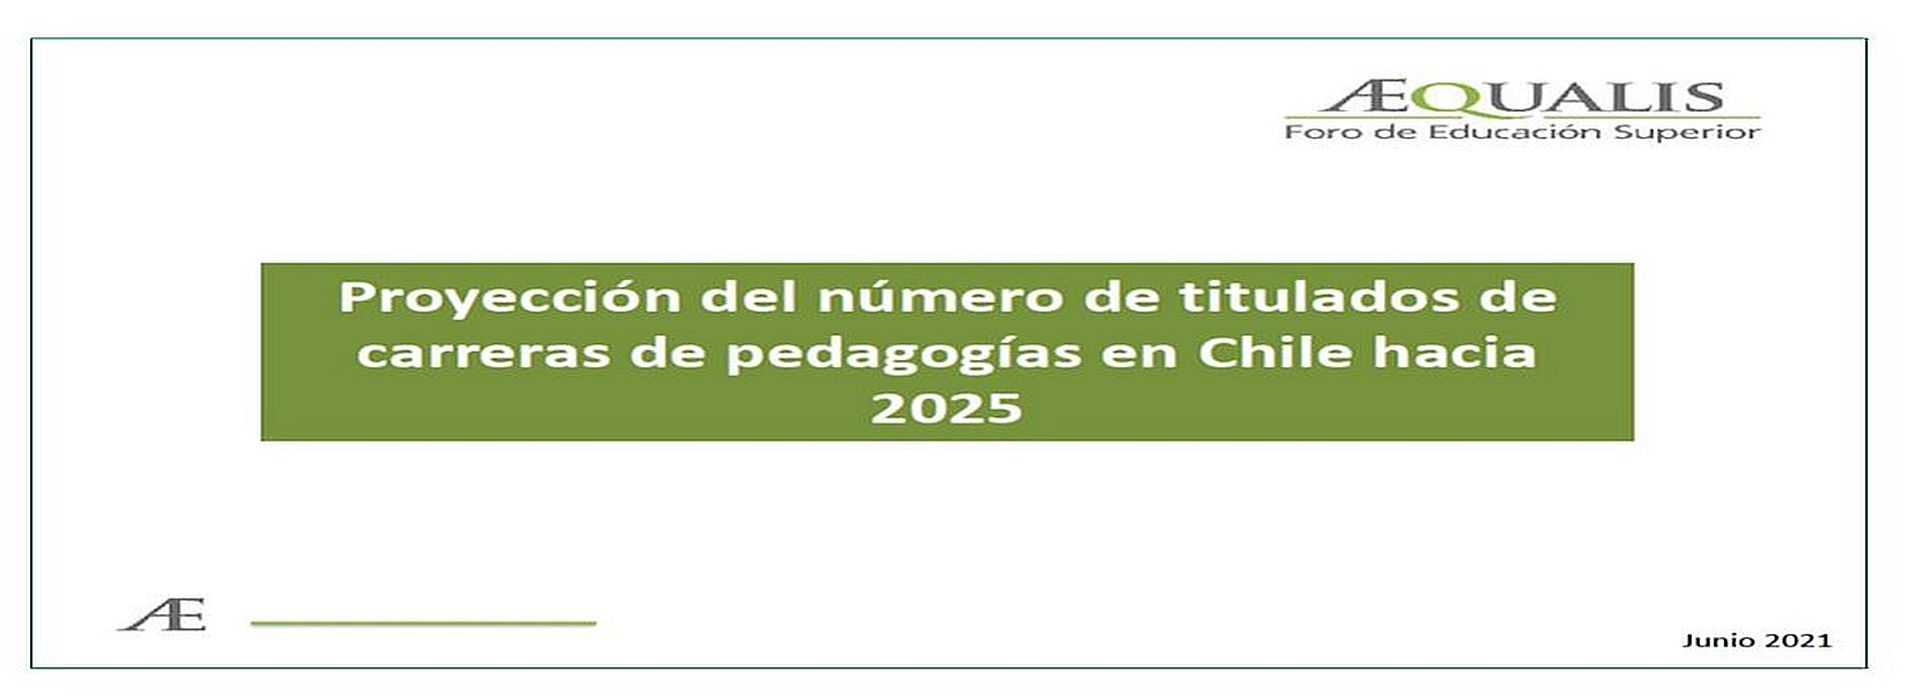 Amplia repercusión del estudio AEQUALIS: Proyección de titulados en pedagogía a 2025